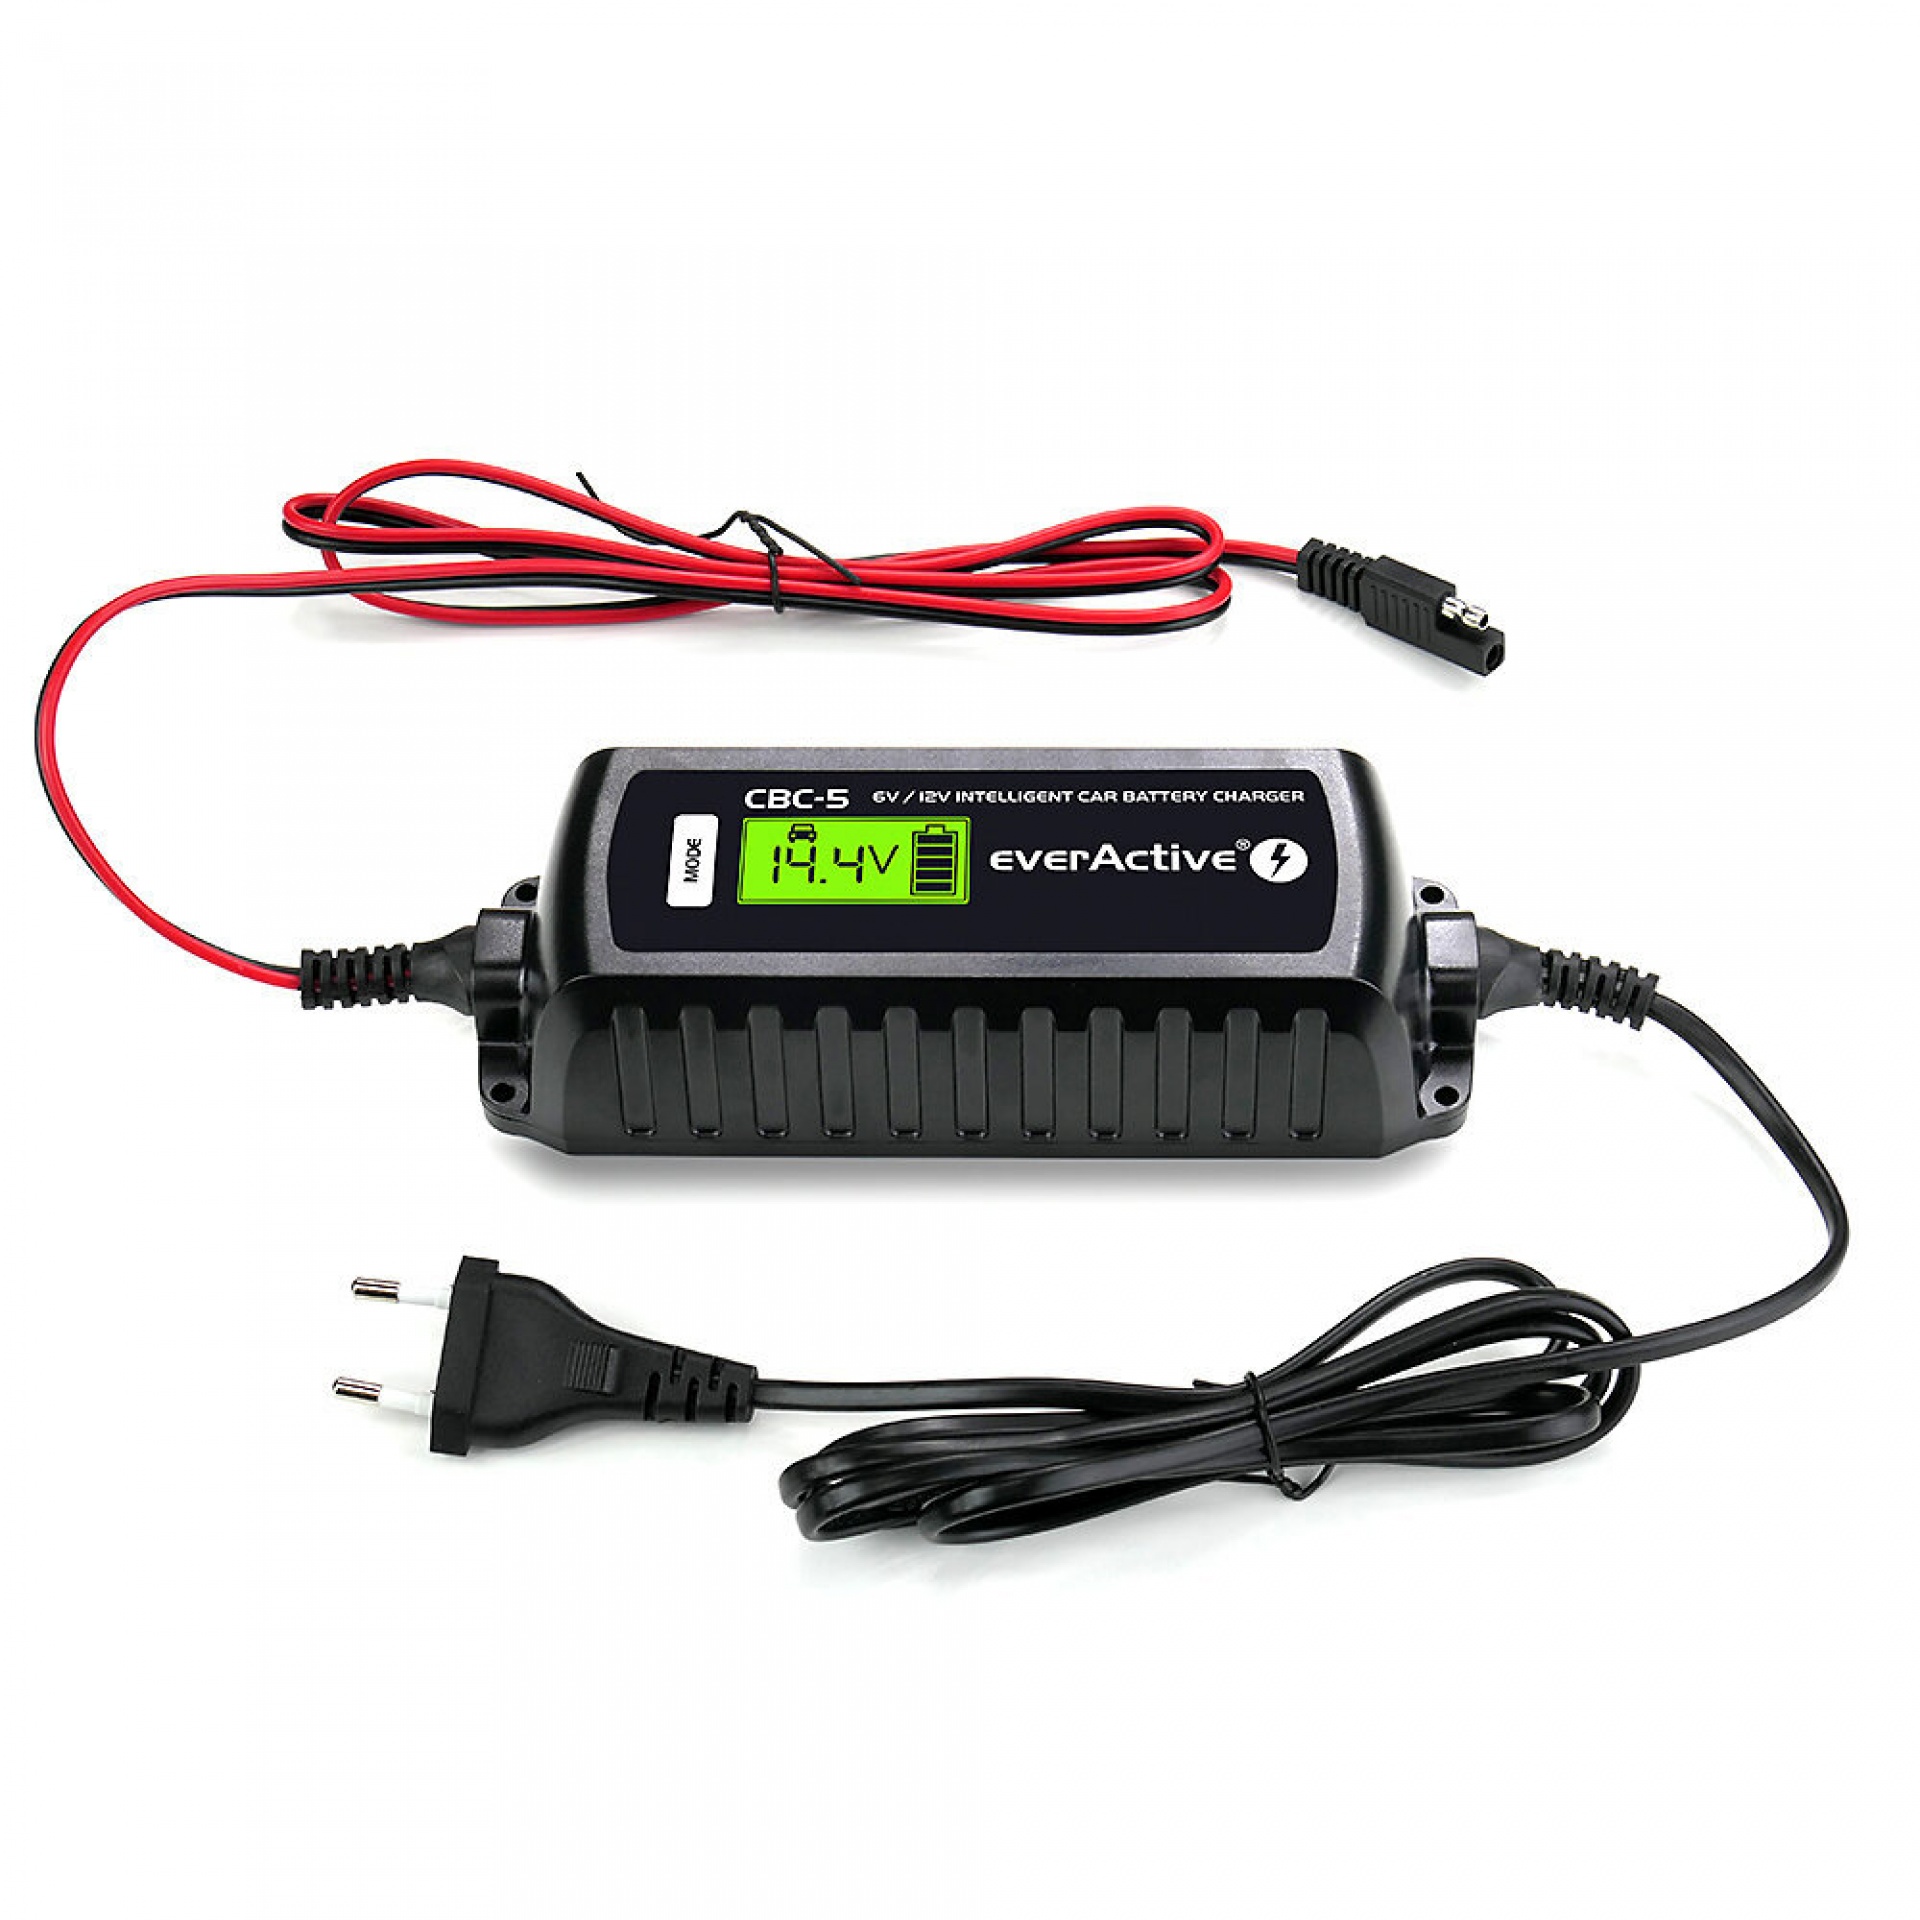 Everactive CBC-5  - Chargeur de batterie pour processeur 6V/12V CBC